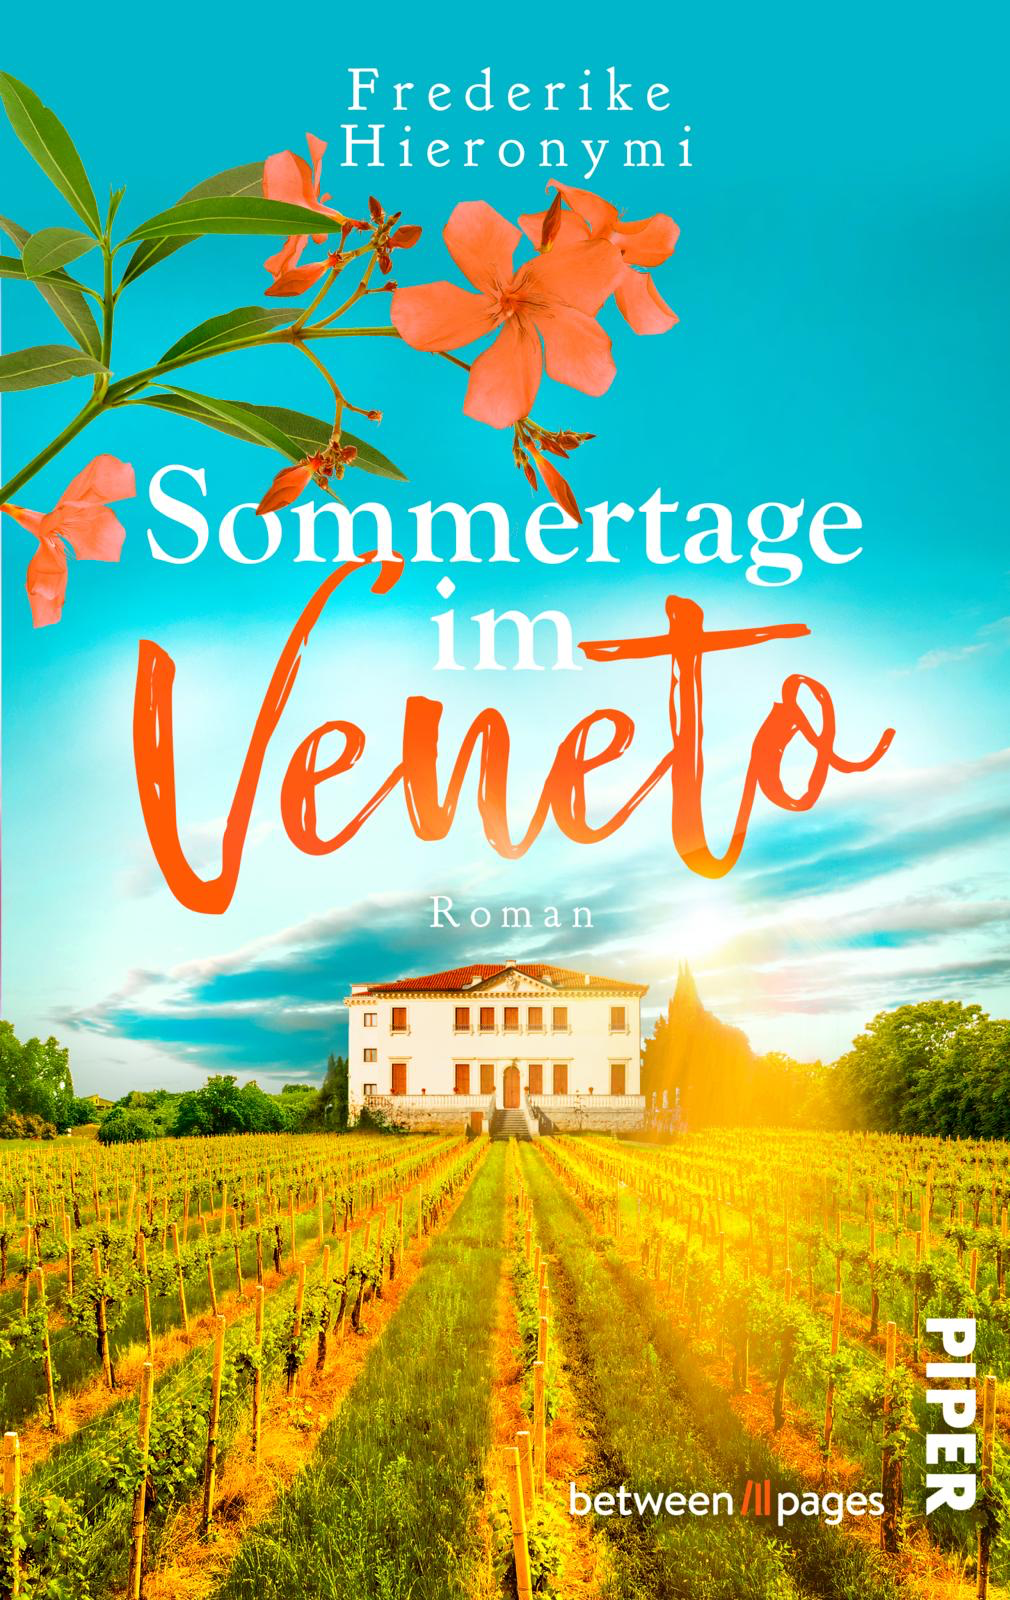 Buchcover zeigt eine italienische Villa umgeben von Weinreben unter strahlend blauem Himmel